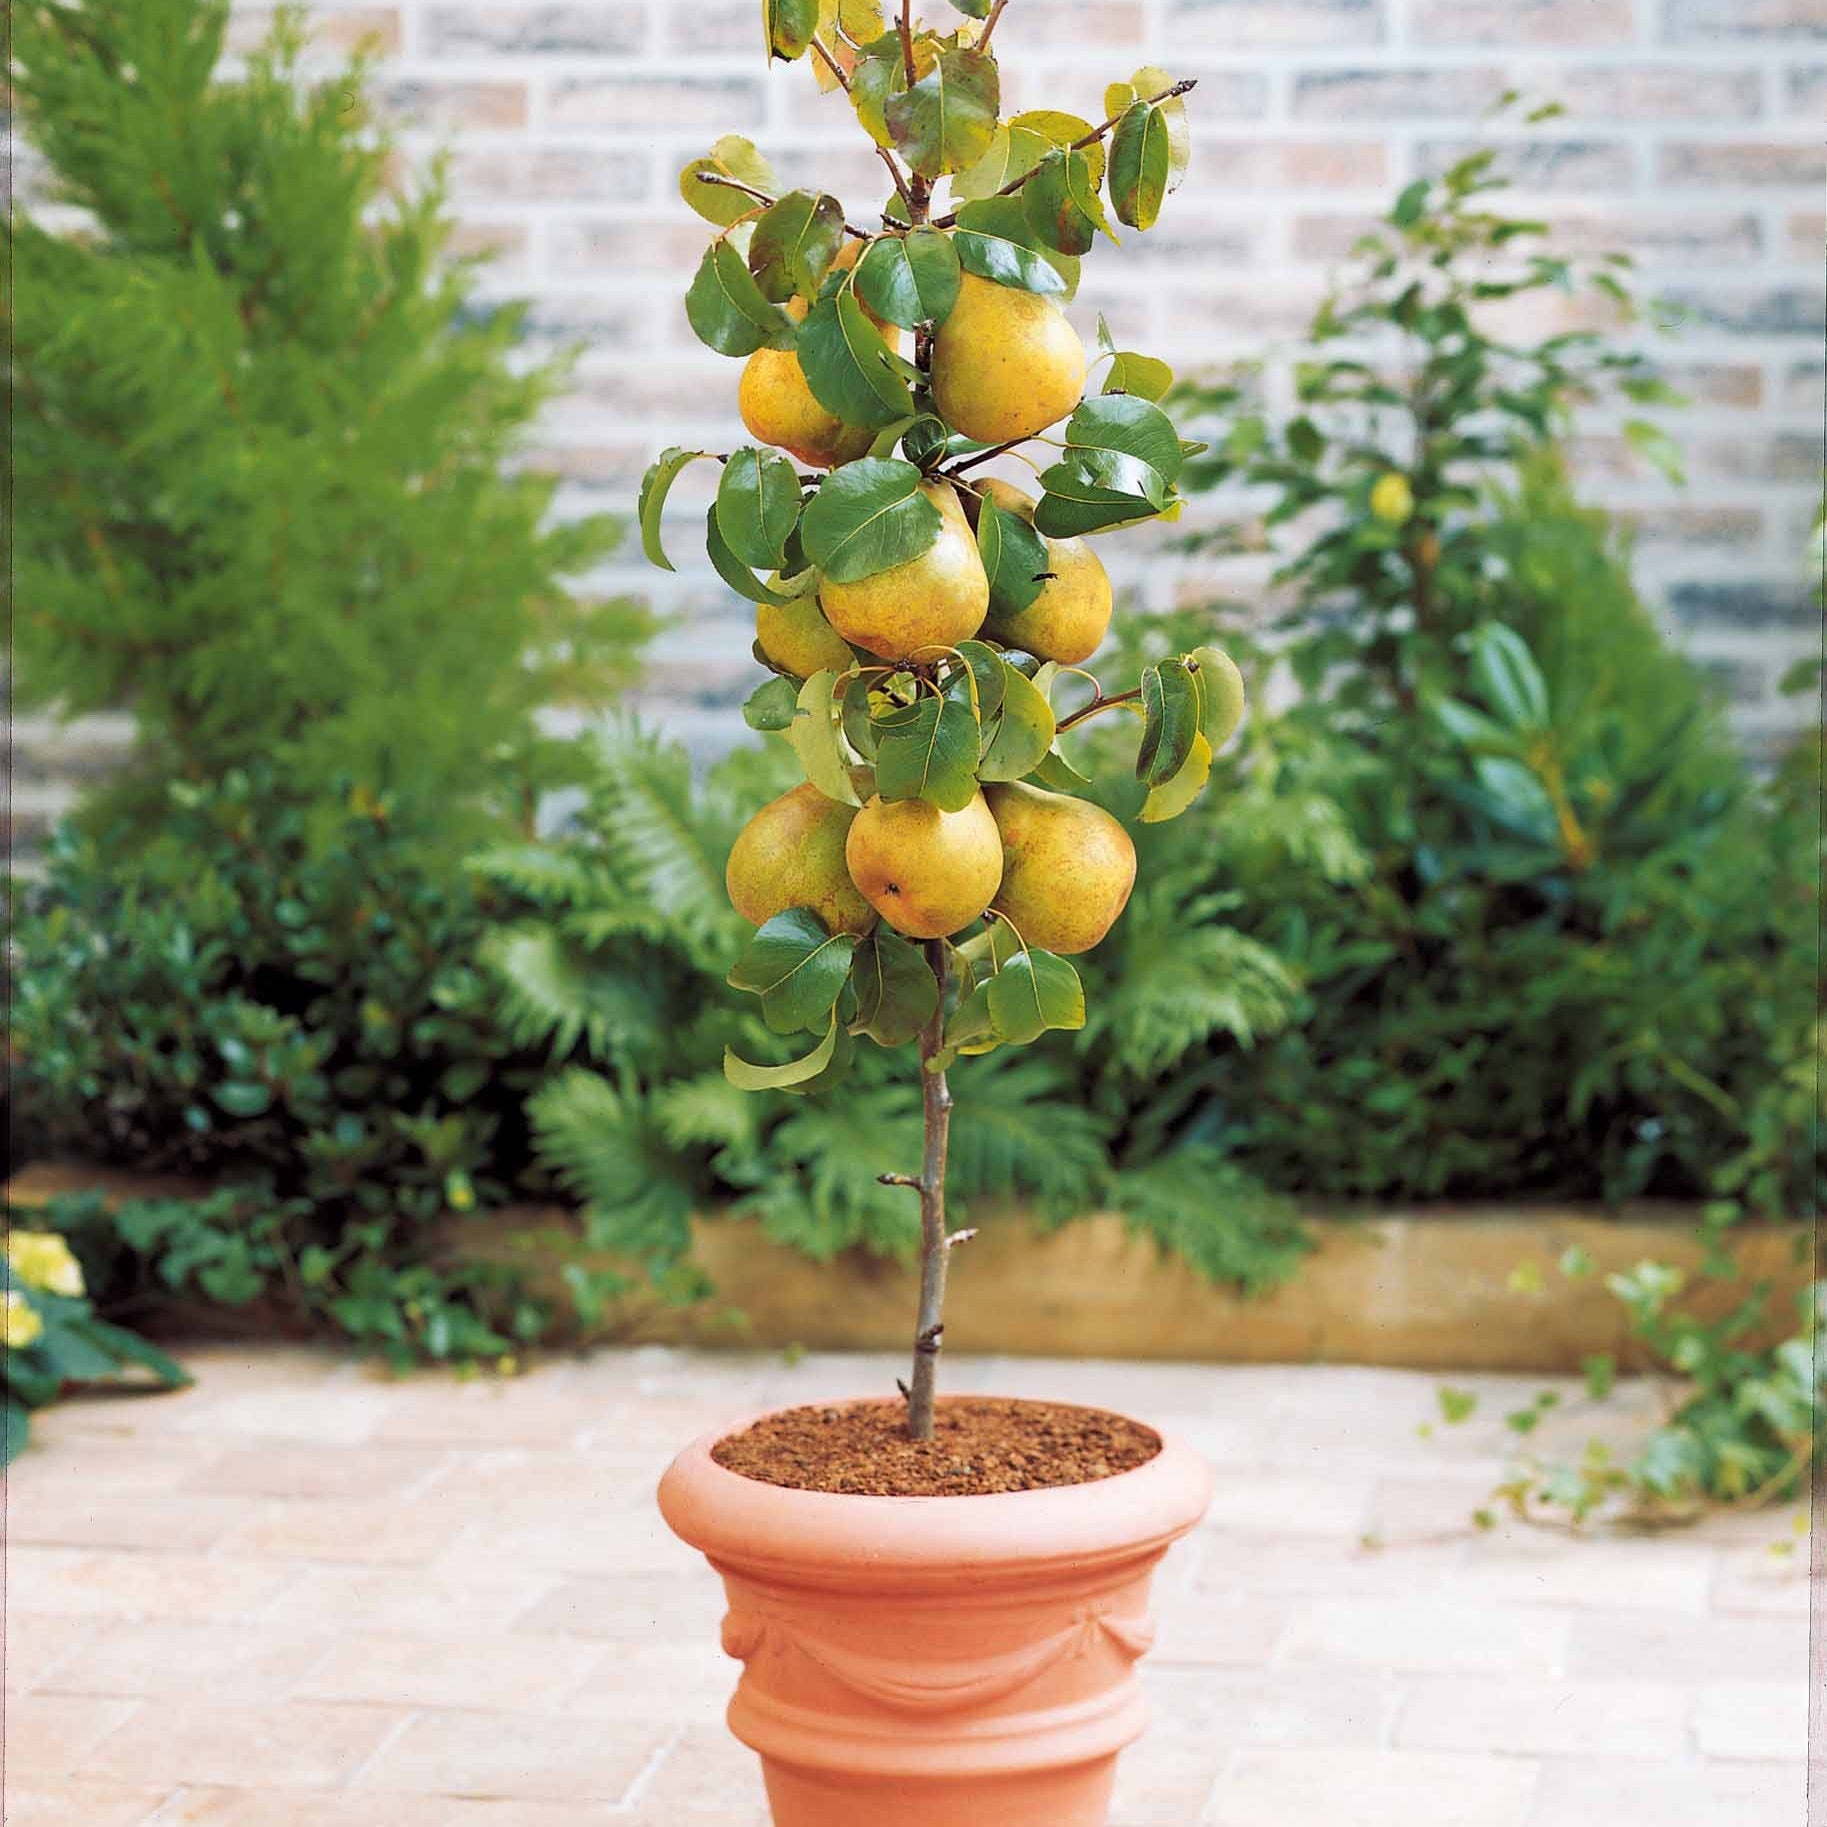 Collectie zomerfruit minibomen (x4) - Type fruitbomen